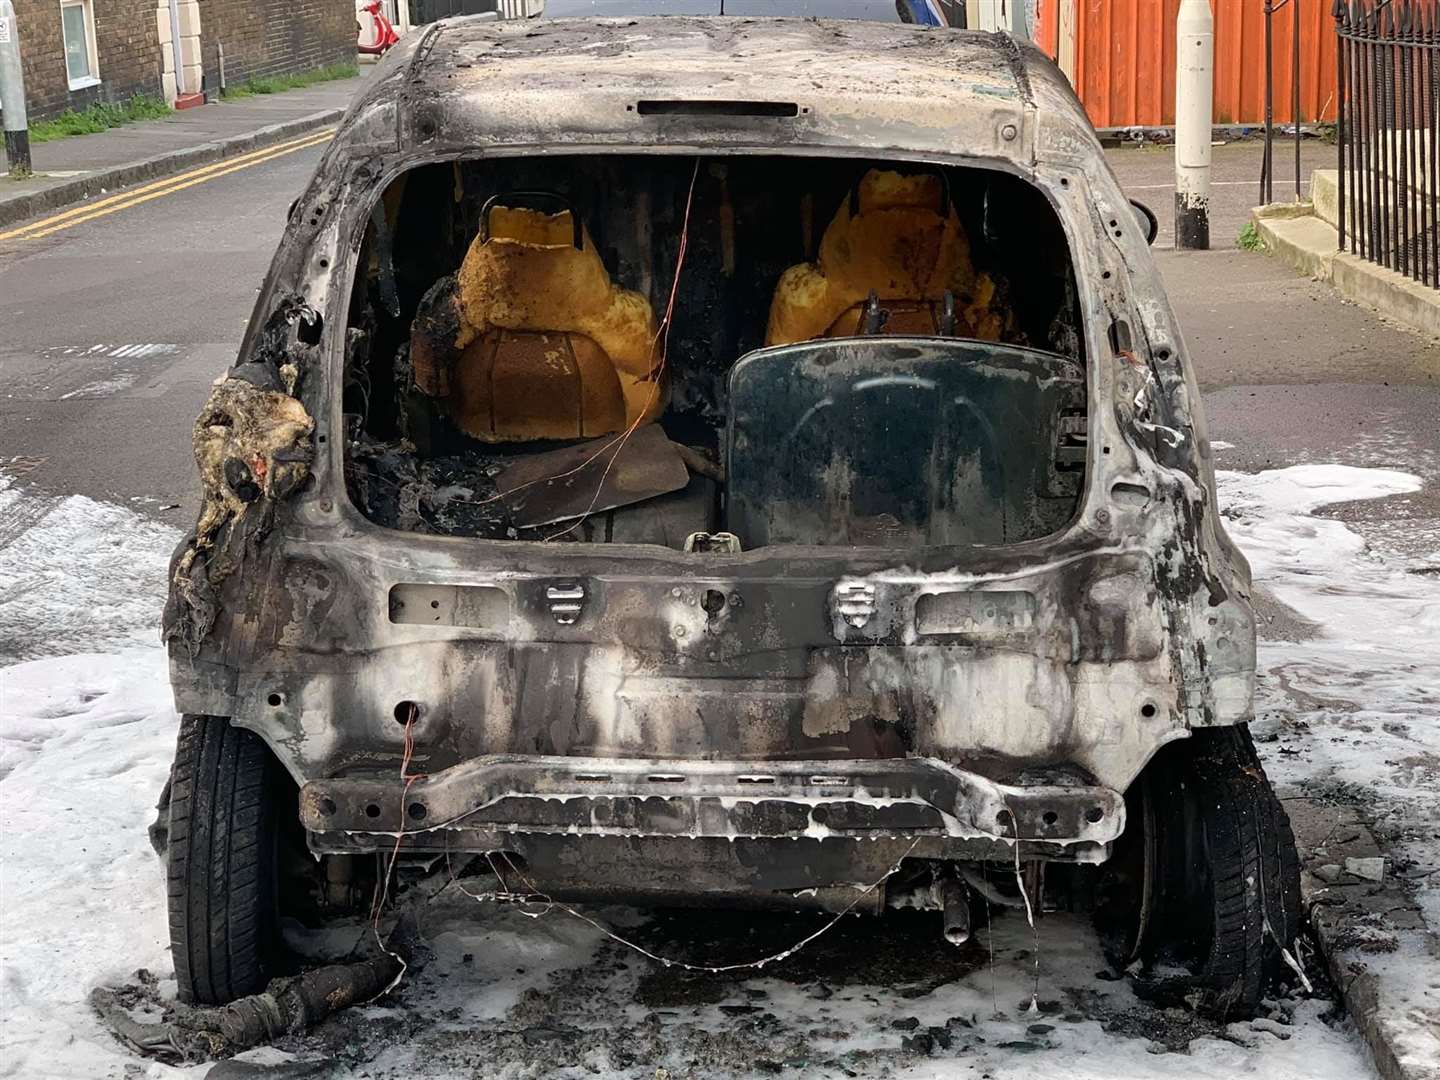 Amy Ware's Citroen C1 was set on fire in Bellevue Road